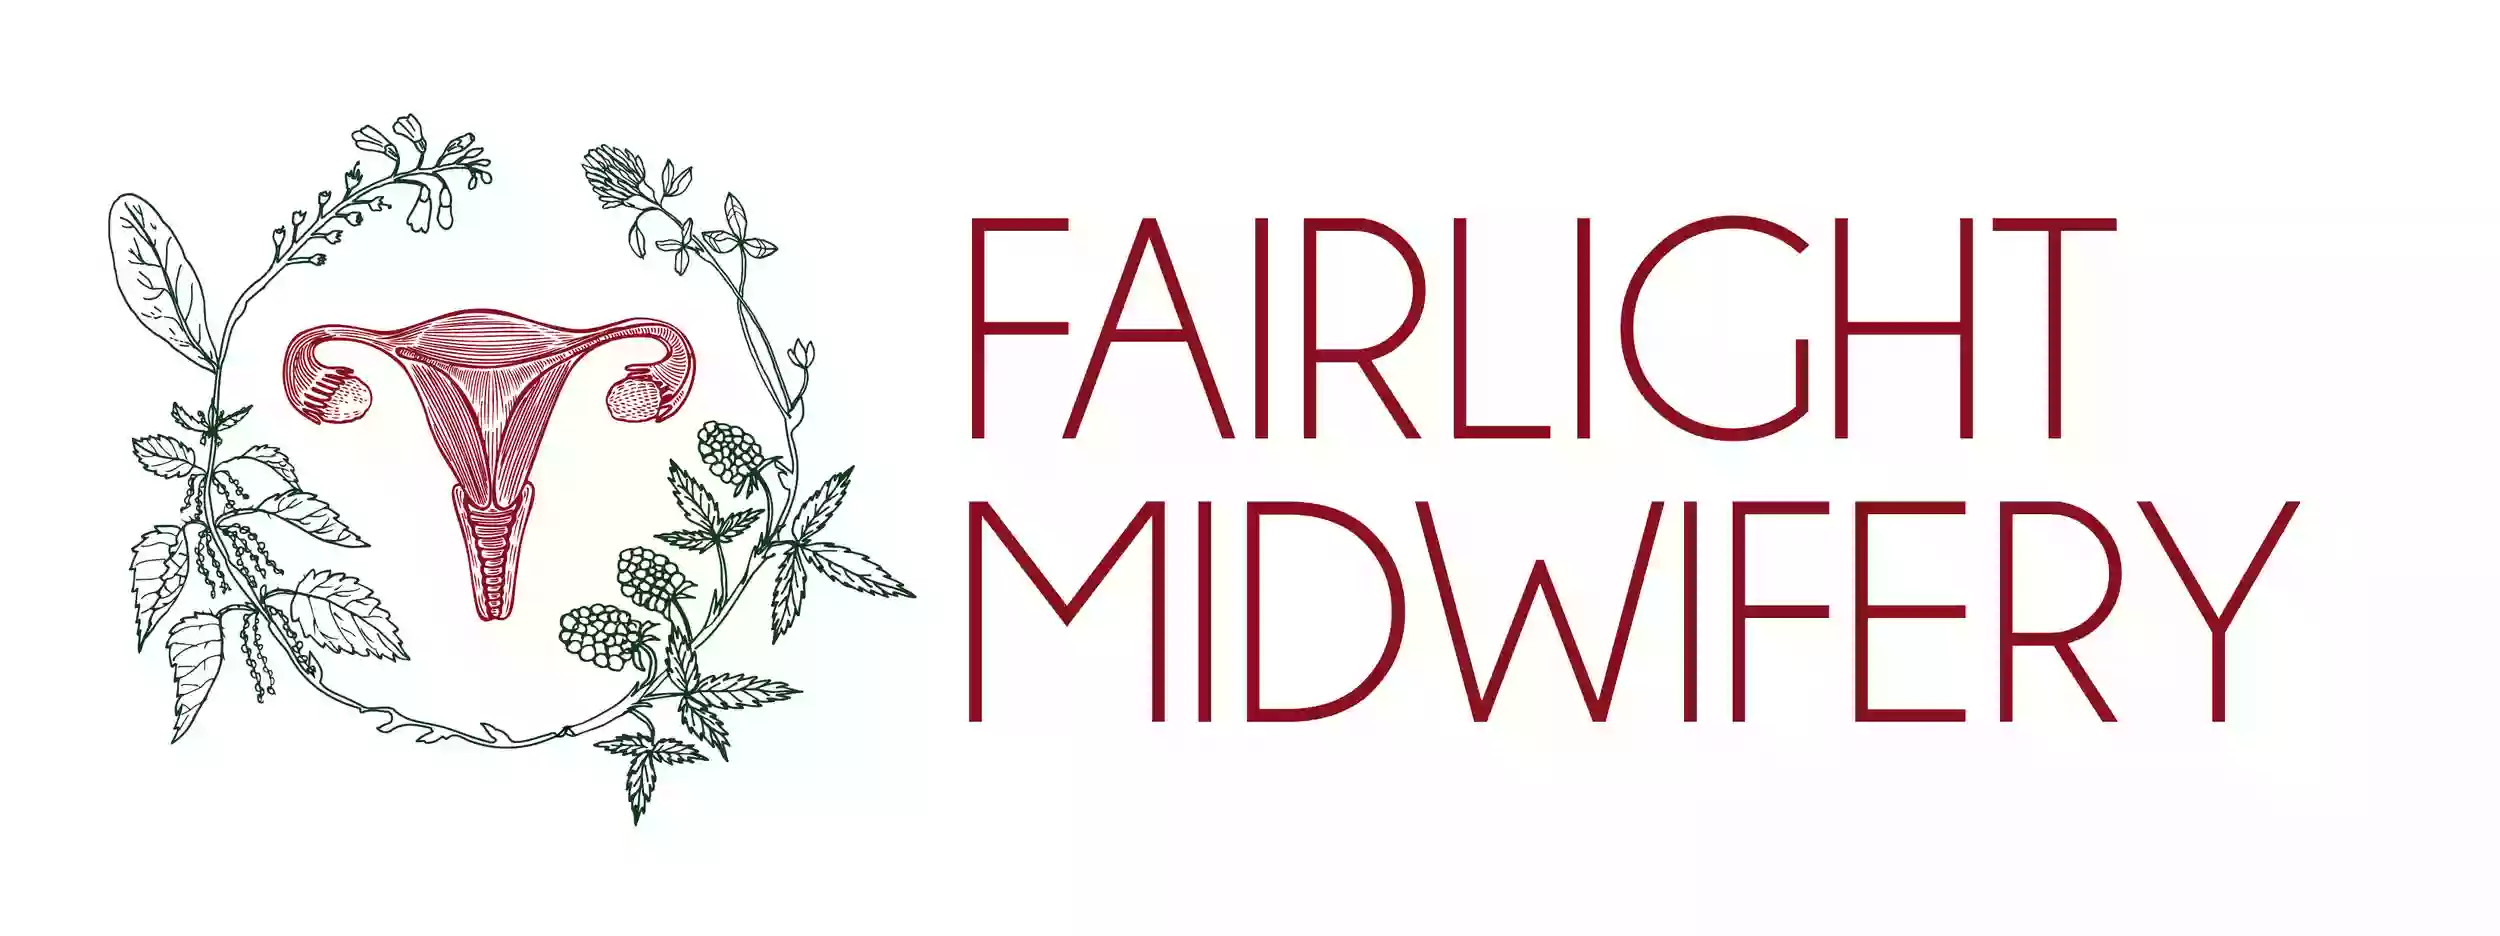 Fairlight Midwifery